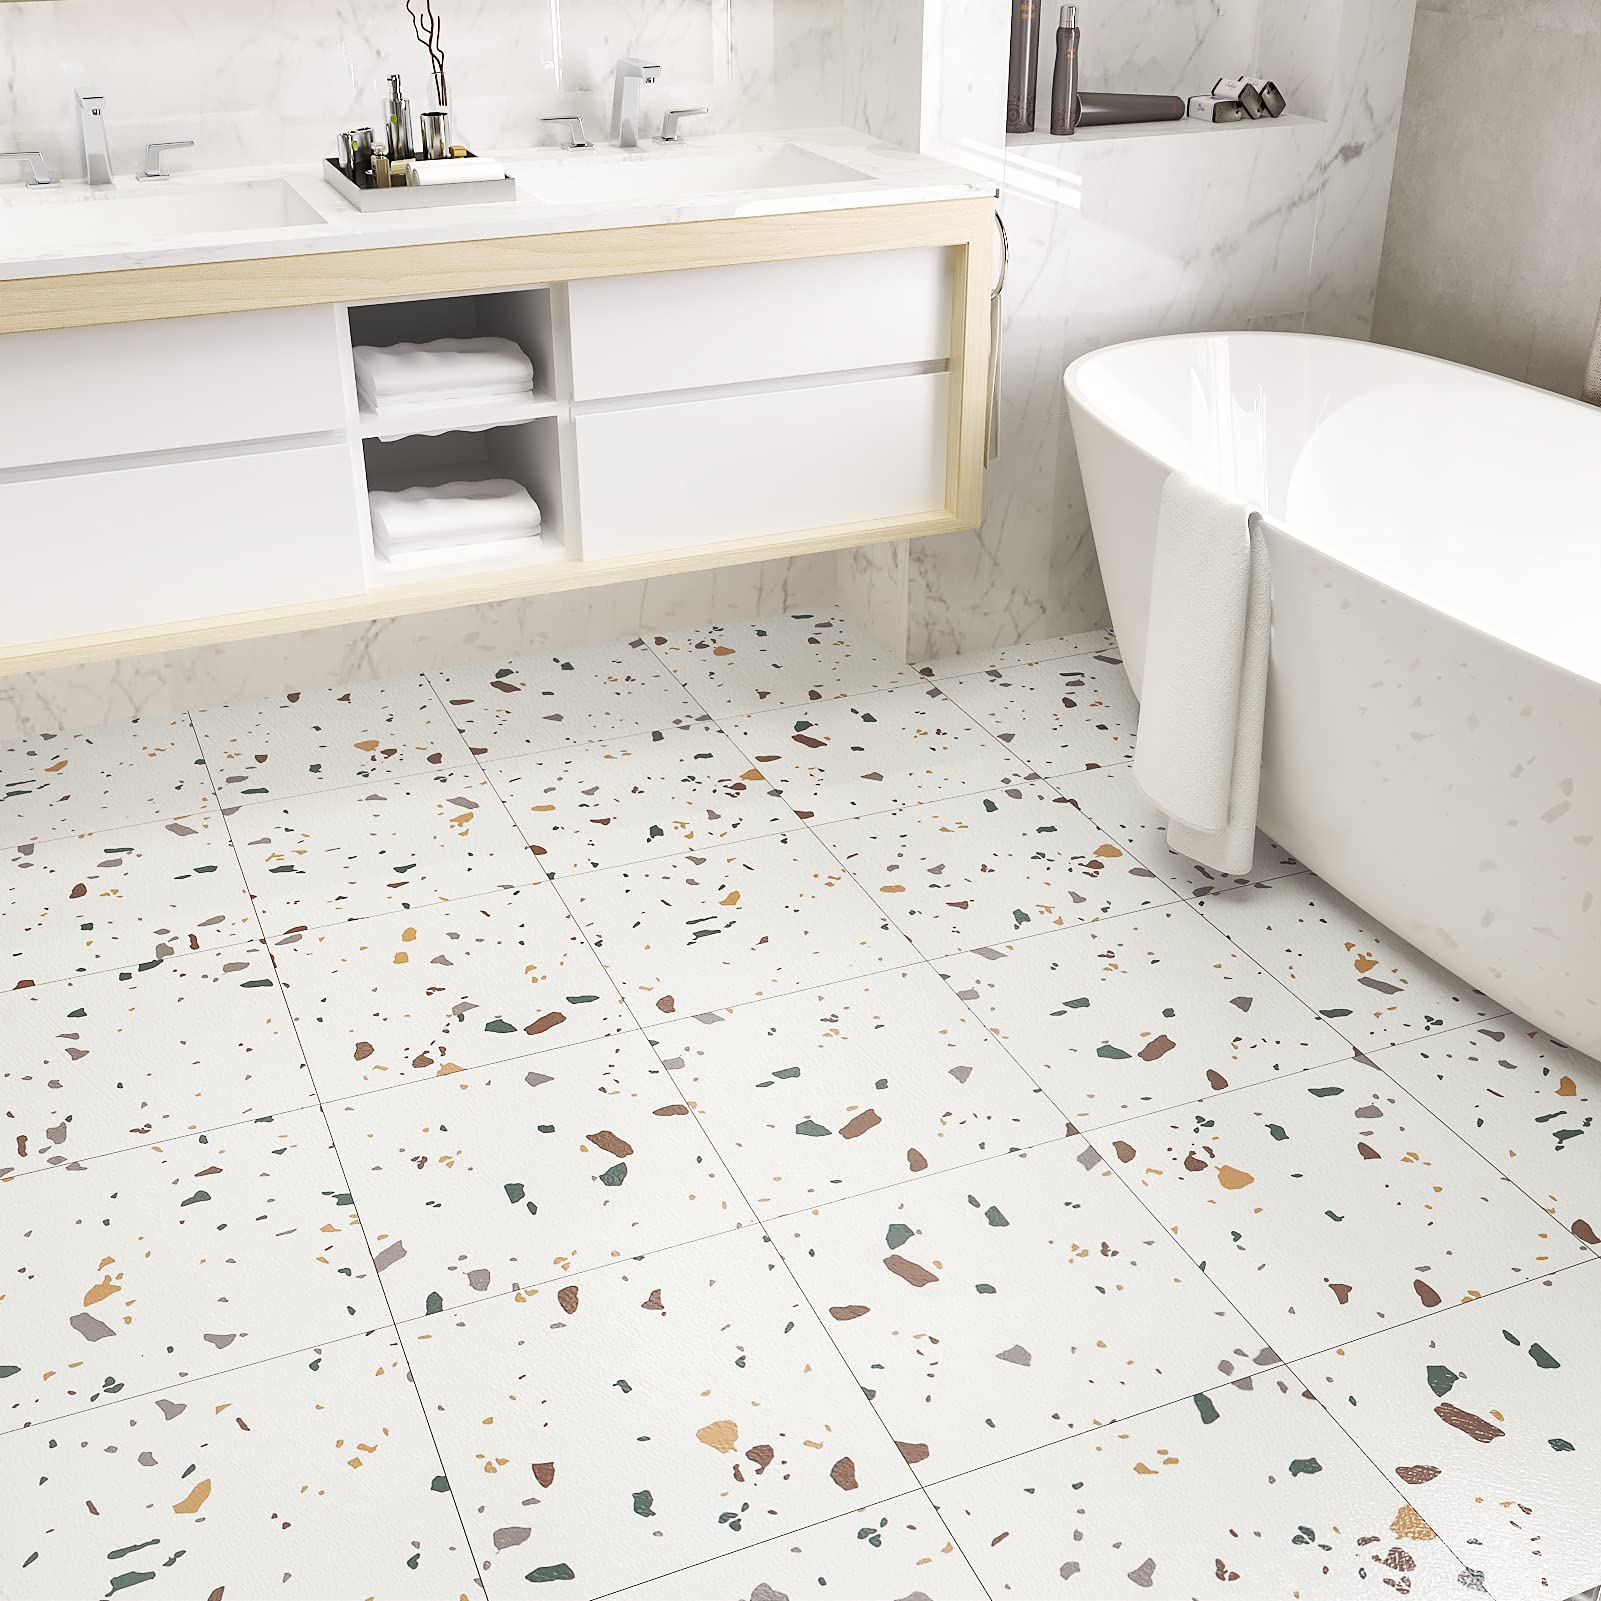 How to clean bathroom floor tiles?